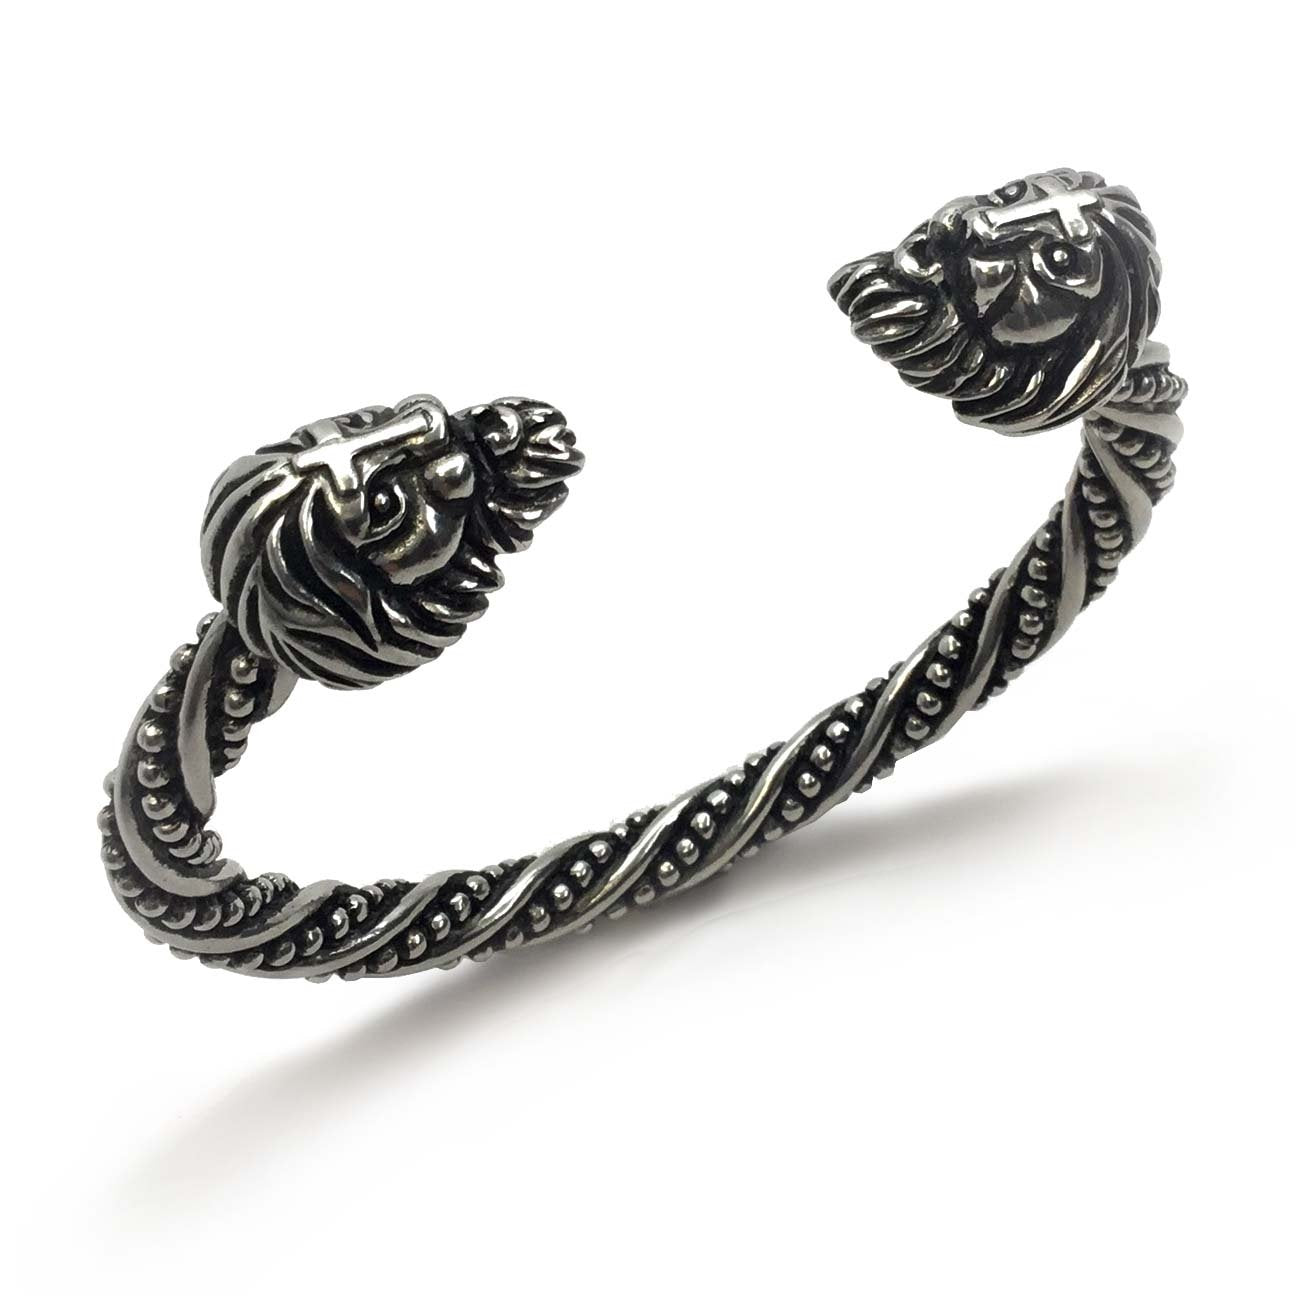 Floki (Vikings) Bracelet - History Channel Brass Arm Ring – Sons of Vikings